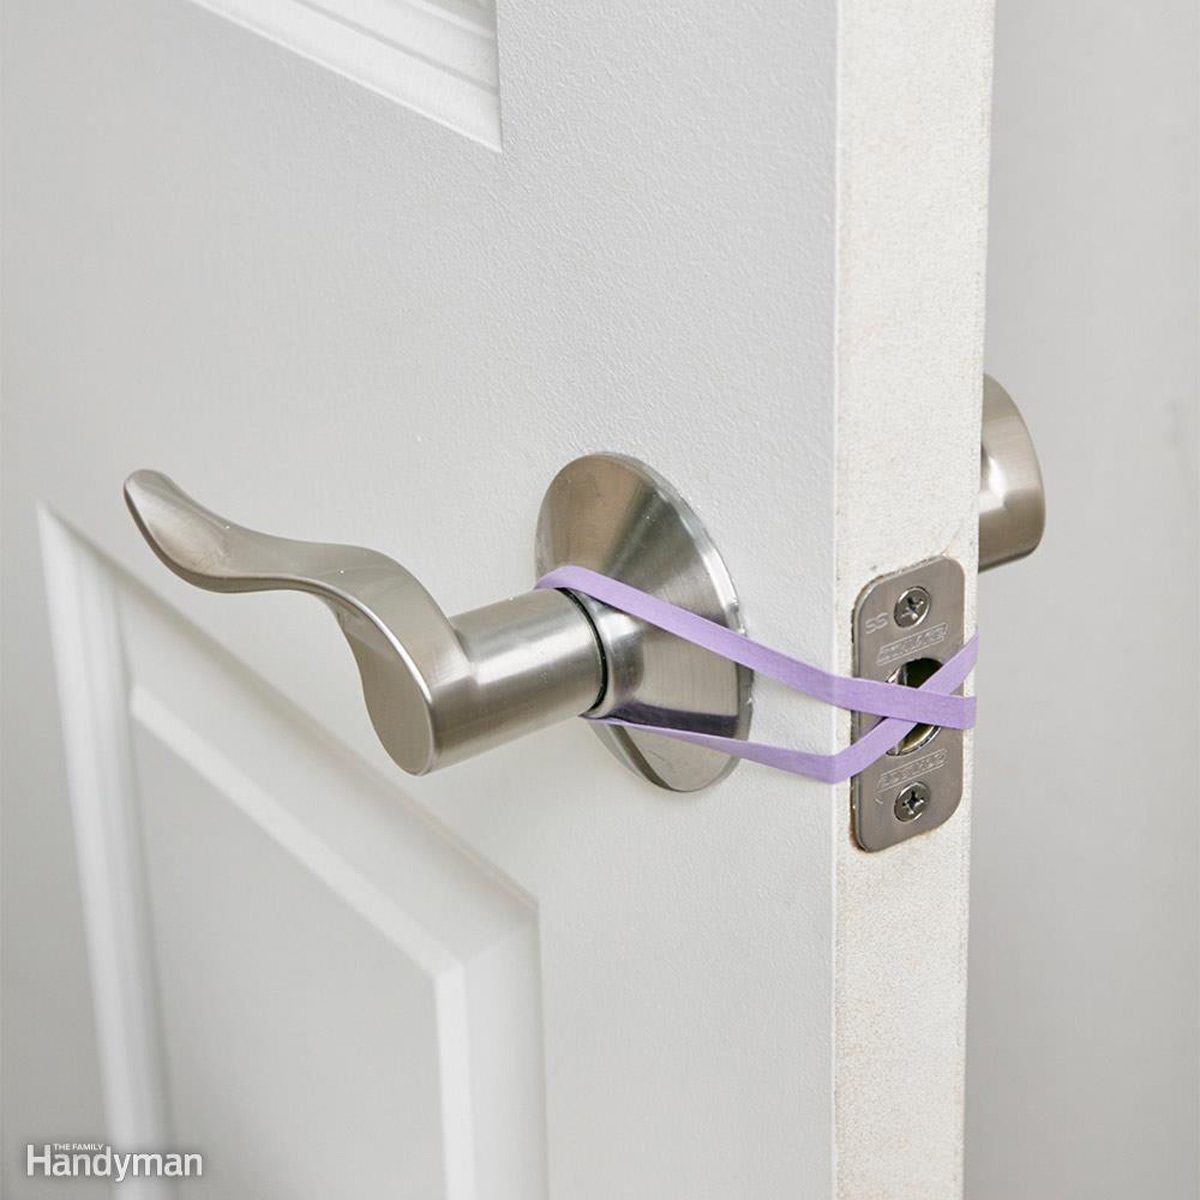 No-Latch (or Hands-Free) Door Trick